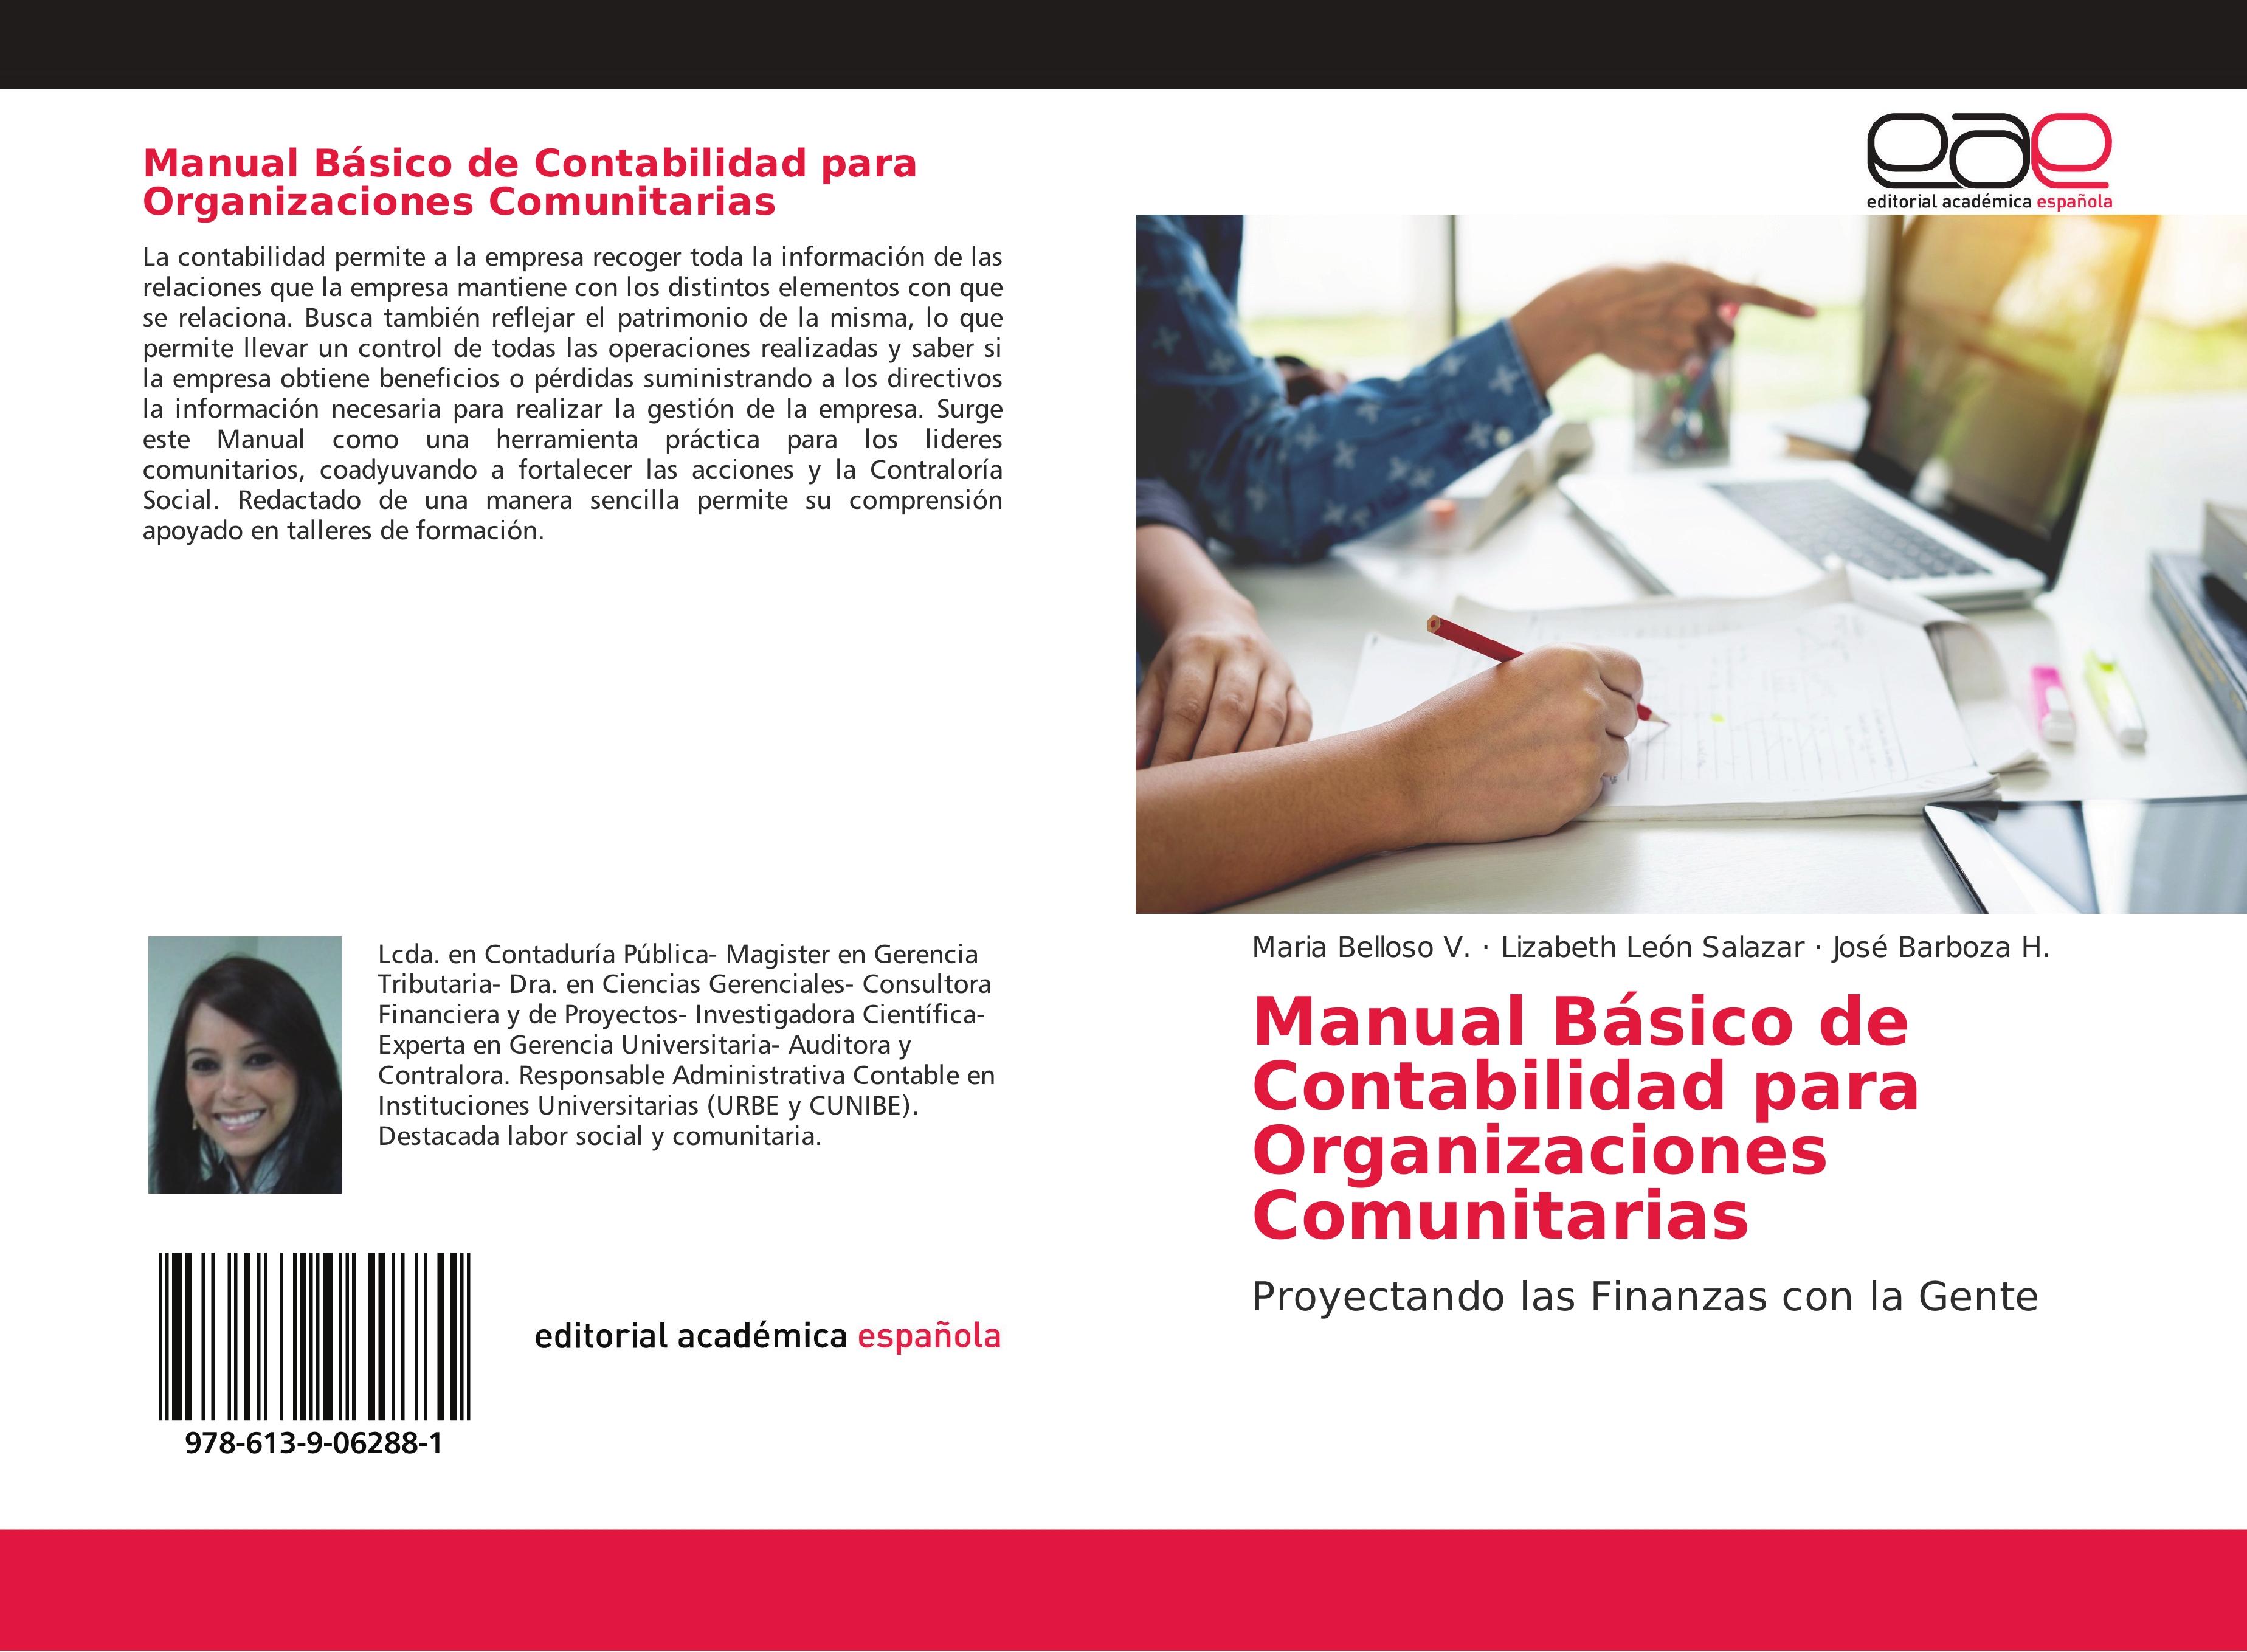 Manual Básico de Contabilidad para Organizaciones Comunitarias - Maria Belloso V. Lizabeth León Salazar José Barboza H.